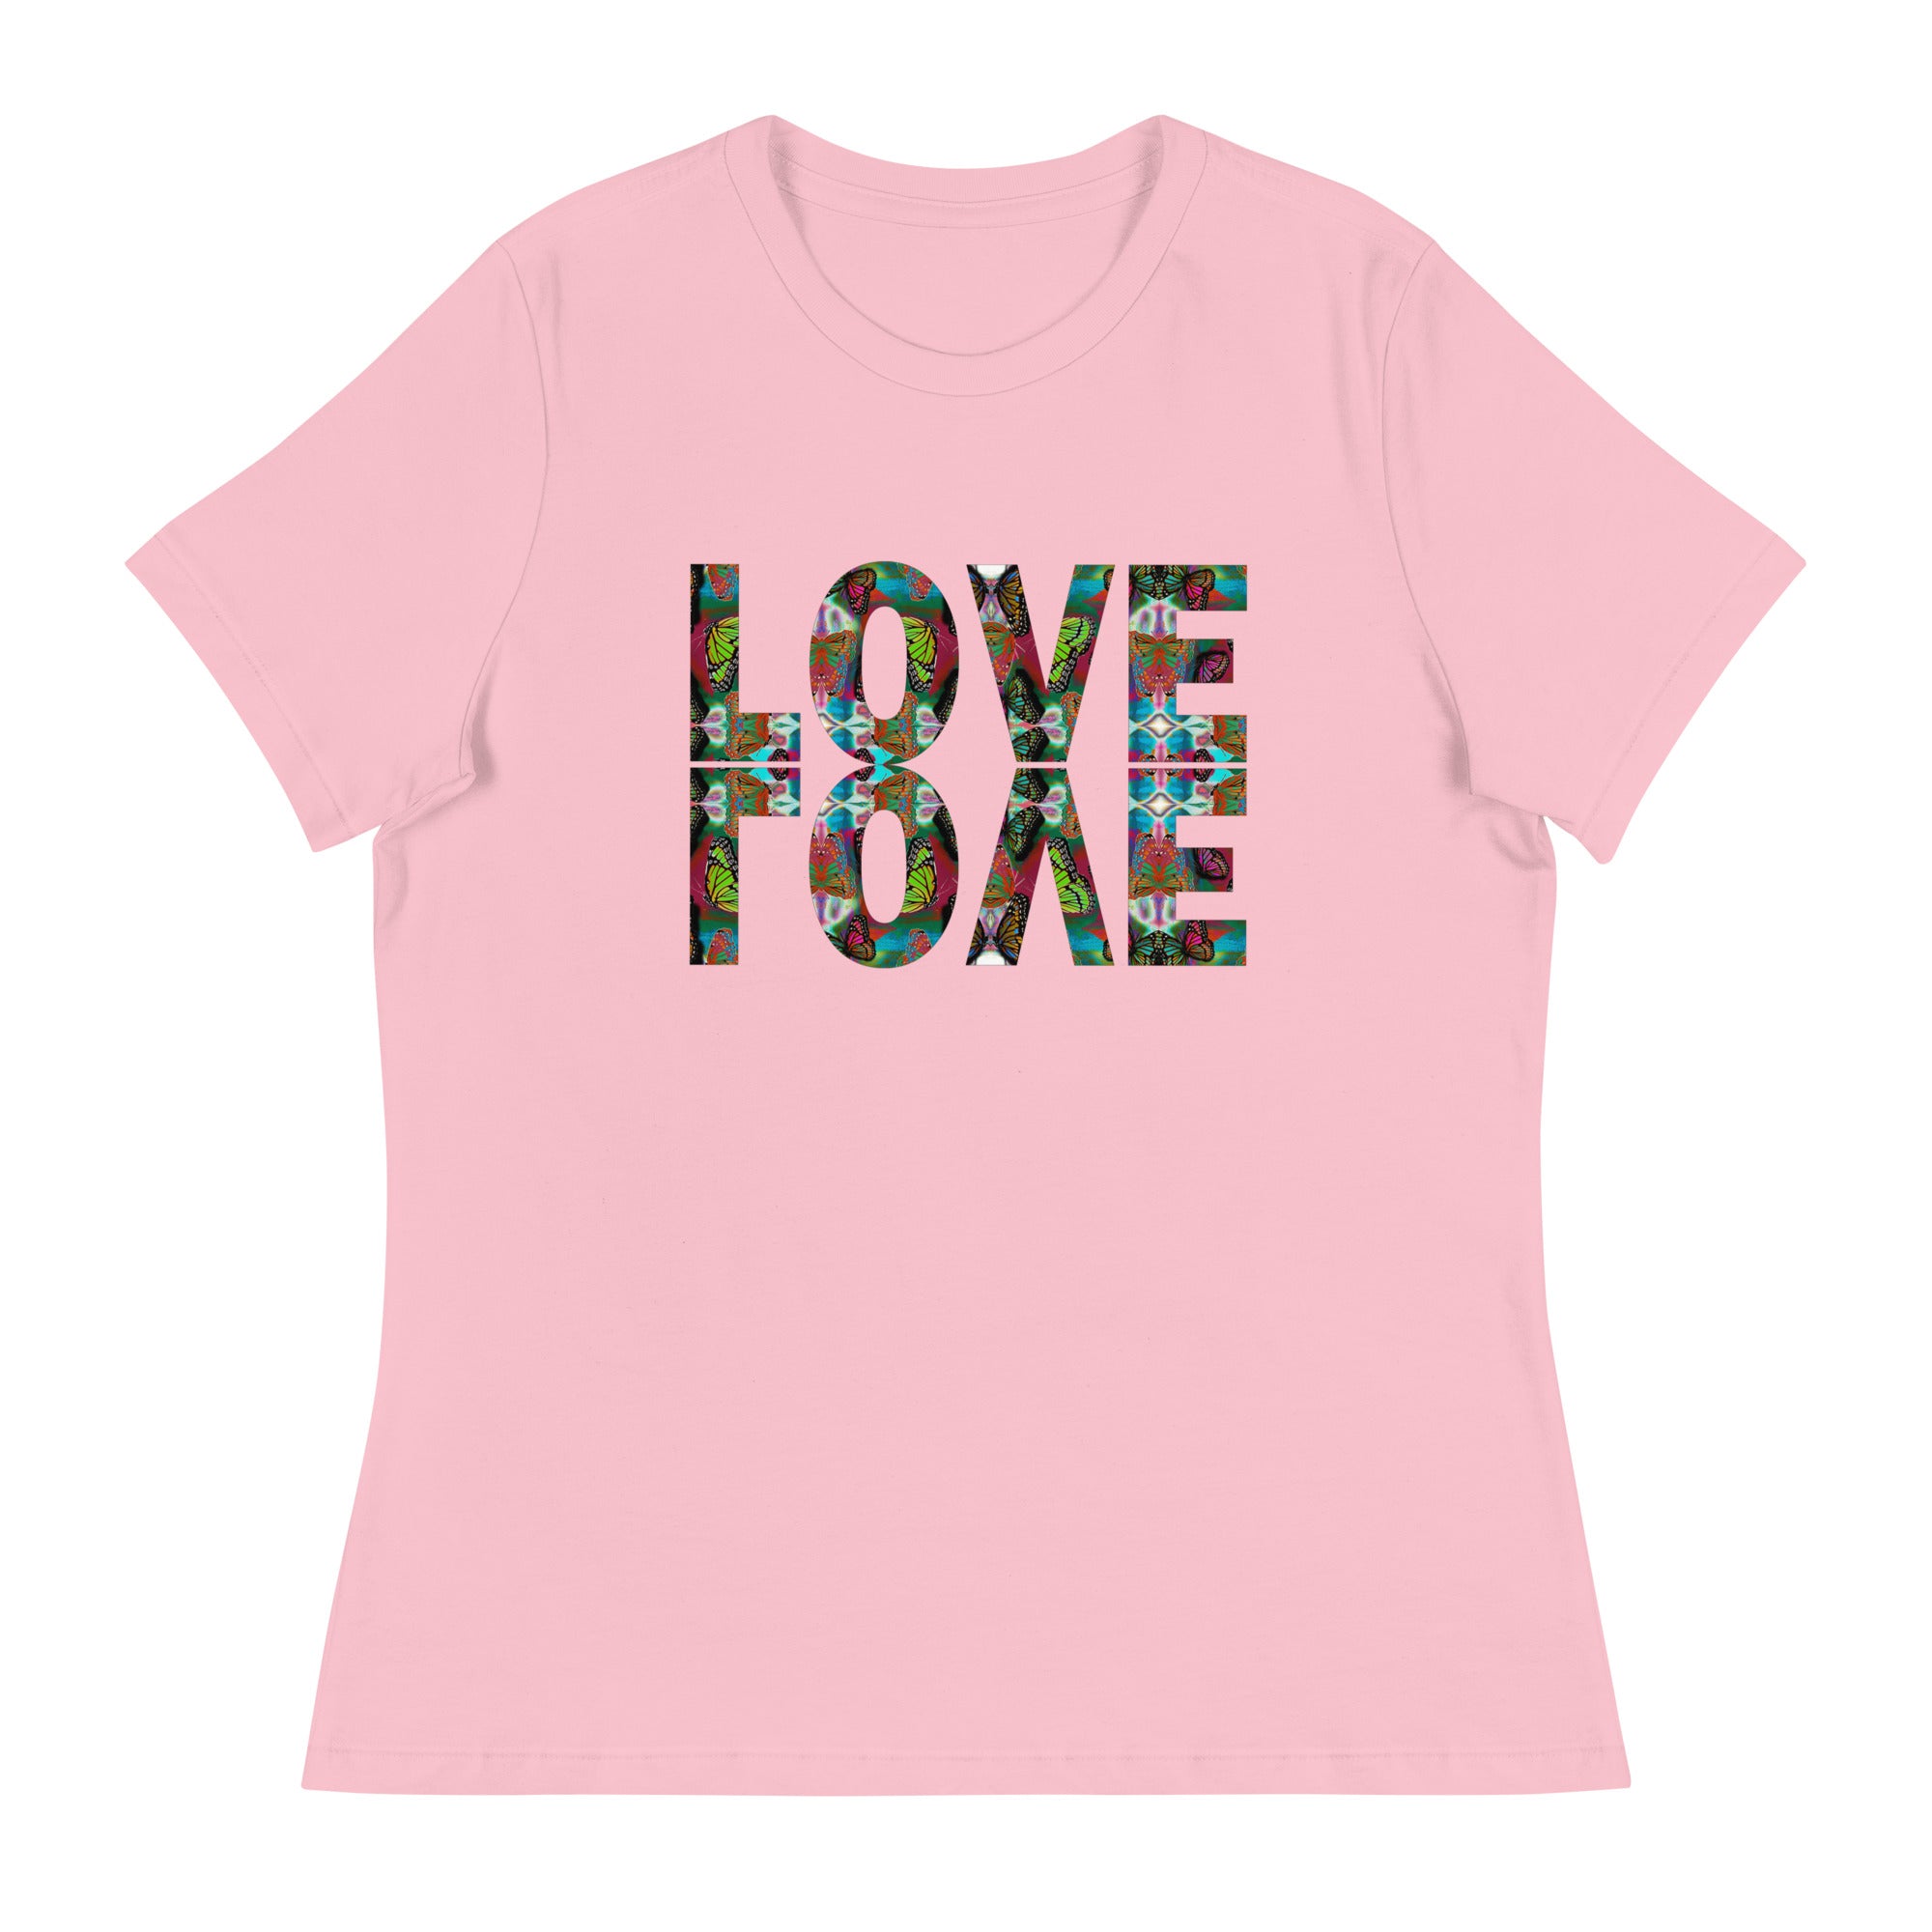 LOVE x 2 ~ Women's Graphic T-Shirt, Butterfly Word Art Short Sleeve Top